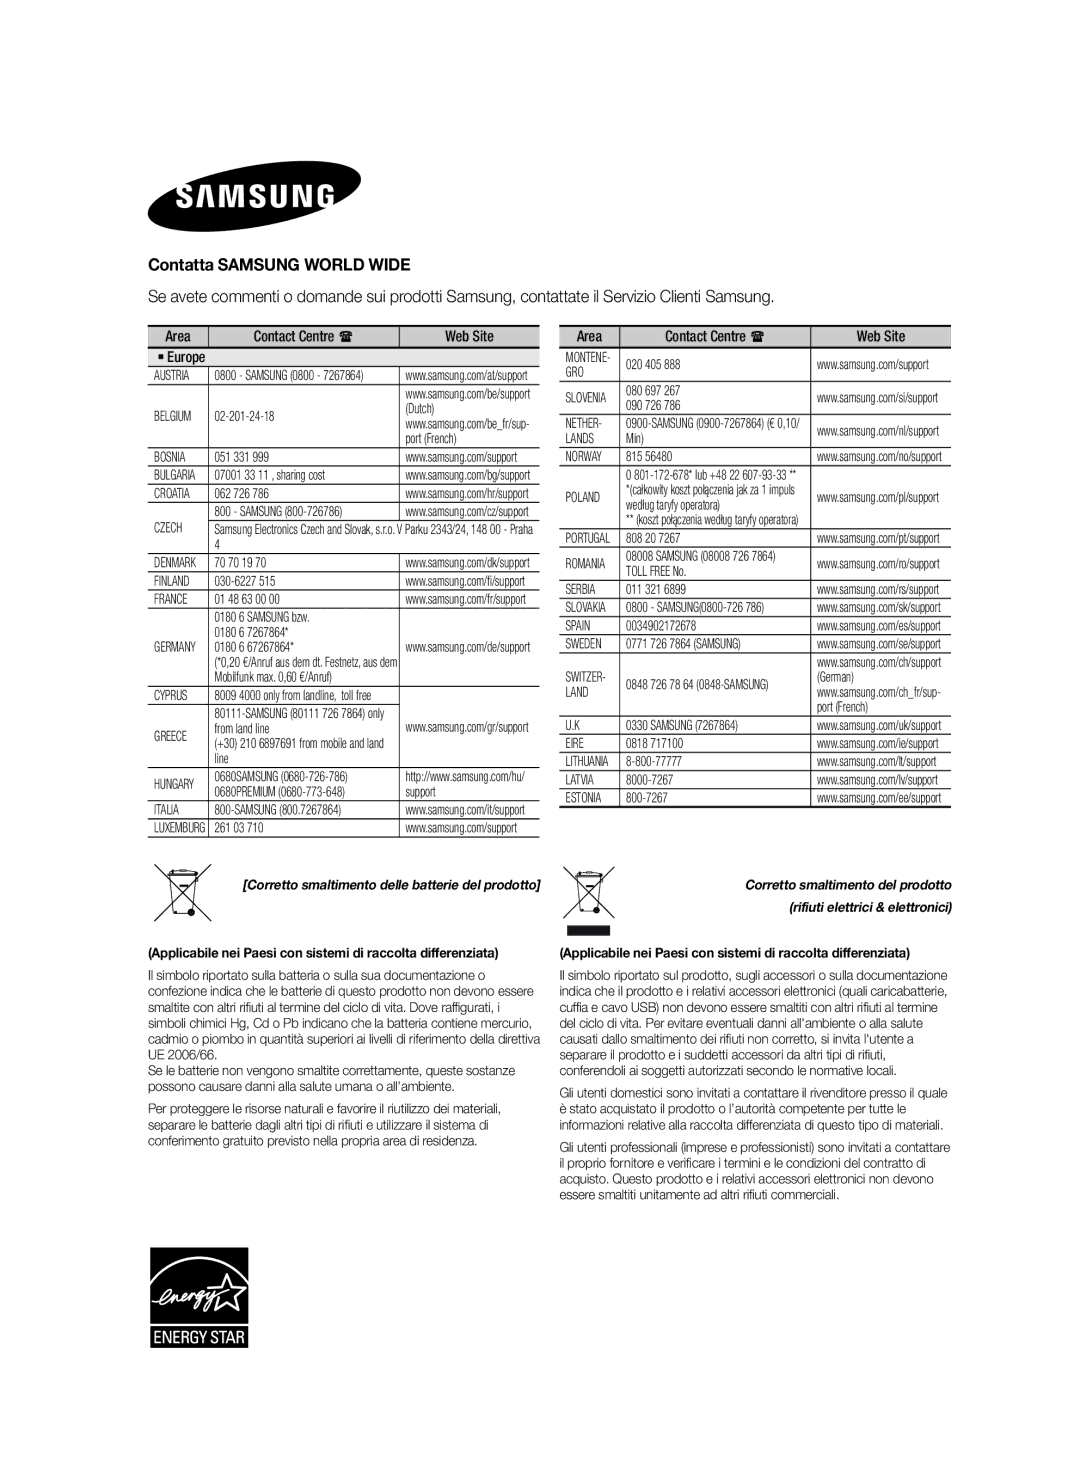 Samsung HW-H7501/ZF, HW-H7500/ZF manual Contatta Samsung World Wide, Rifiuti elettrici & elettronici 